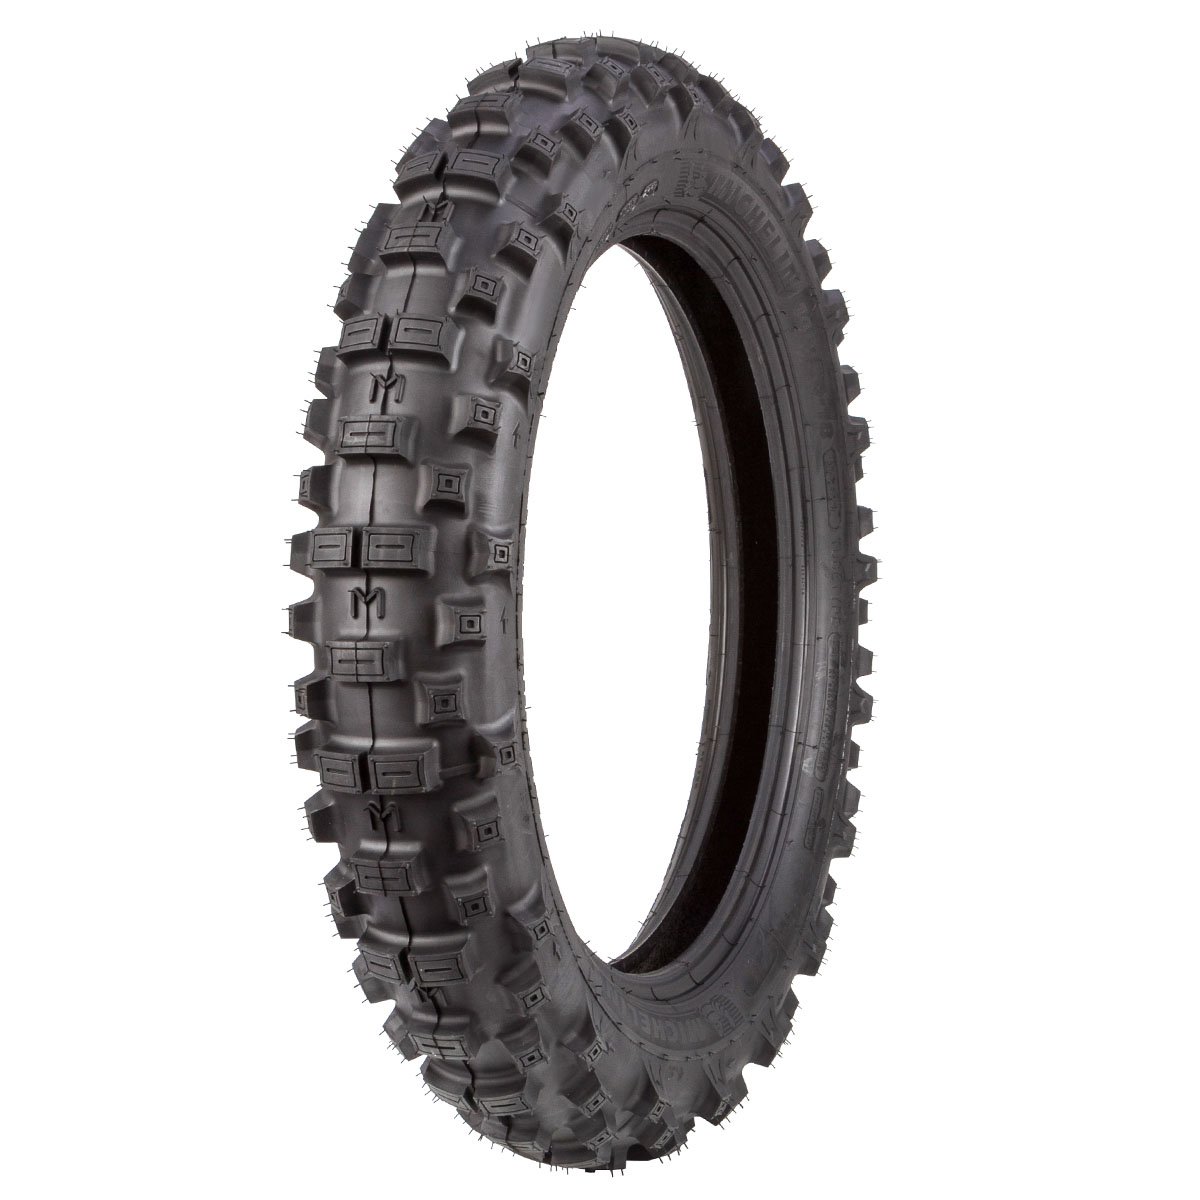 Michelin Rear Tire Enduro 140/80-18, Medium, for FIM